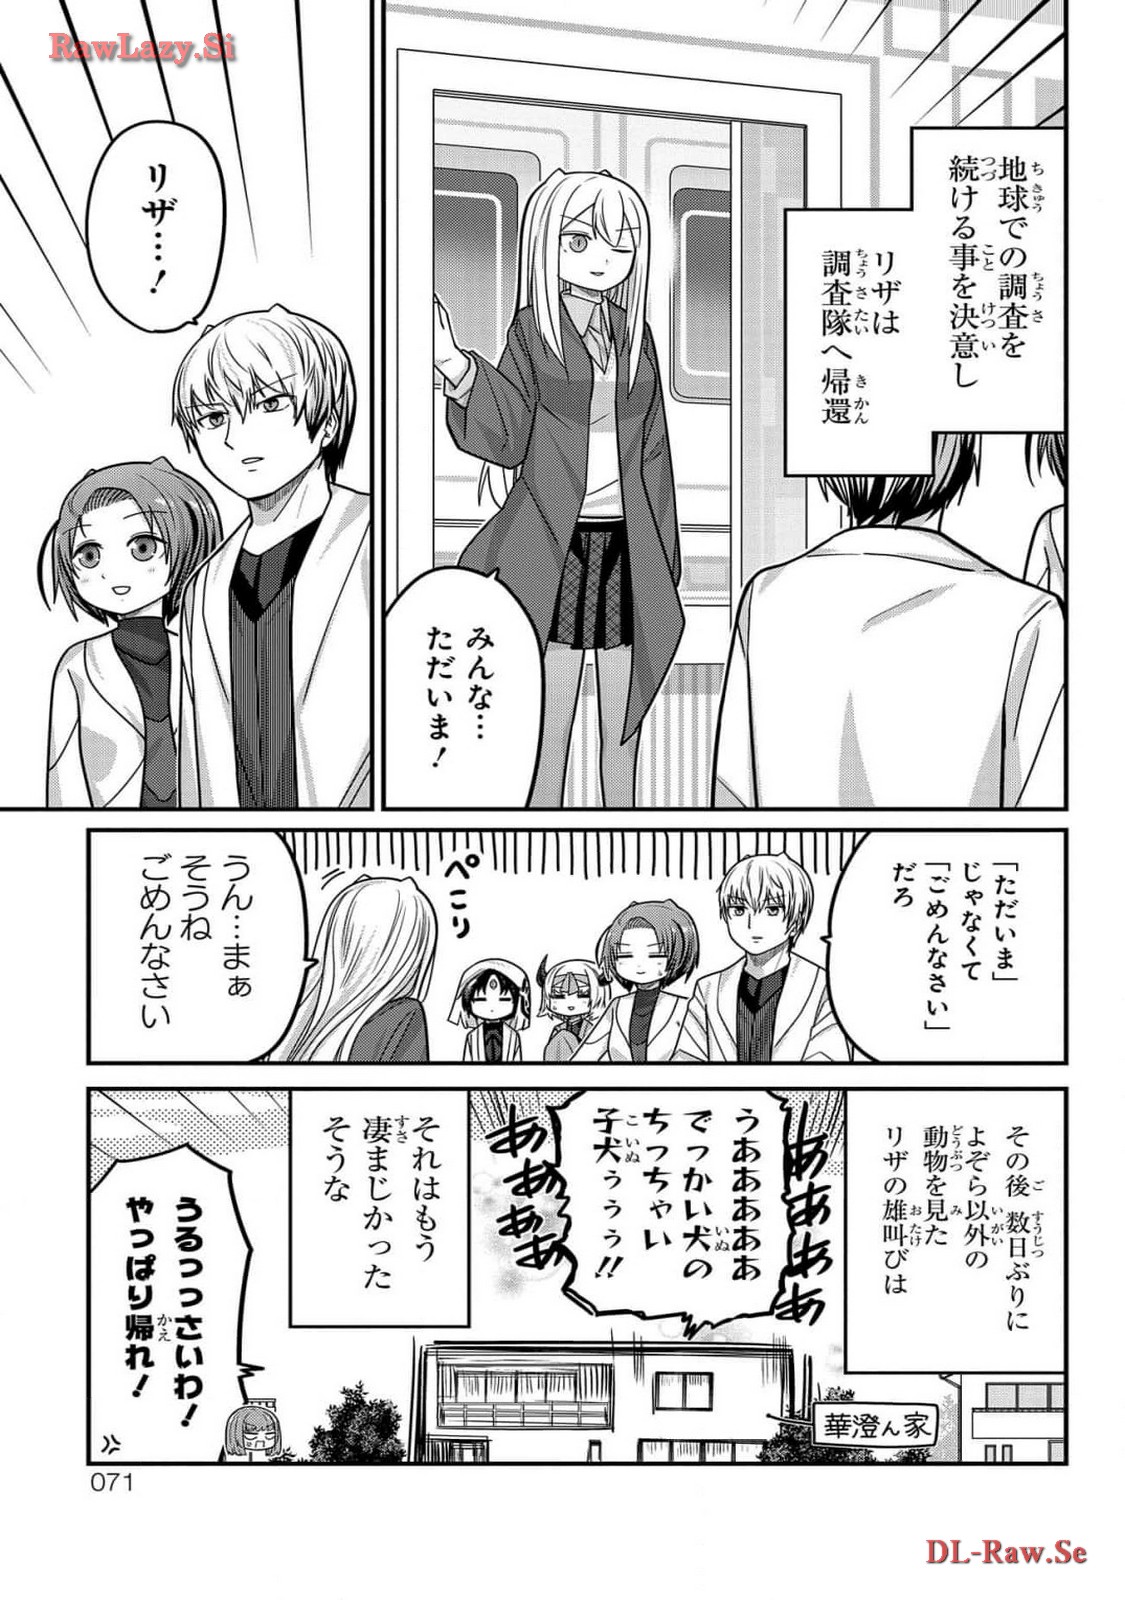 Kawaisugi Crisis - Chapter 100 - Page 15